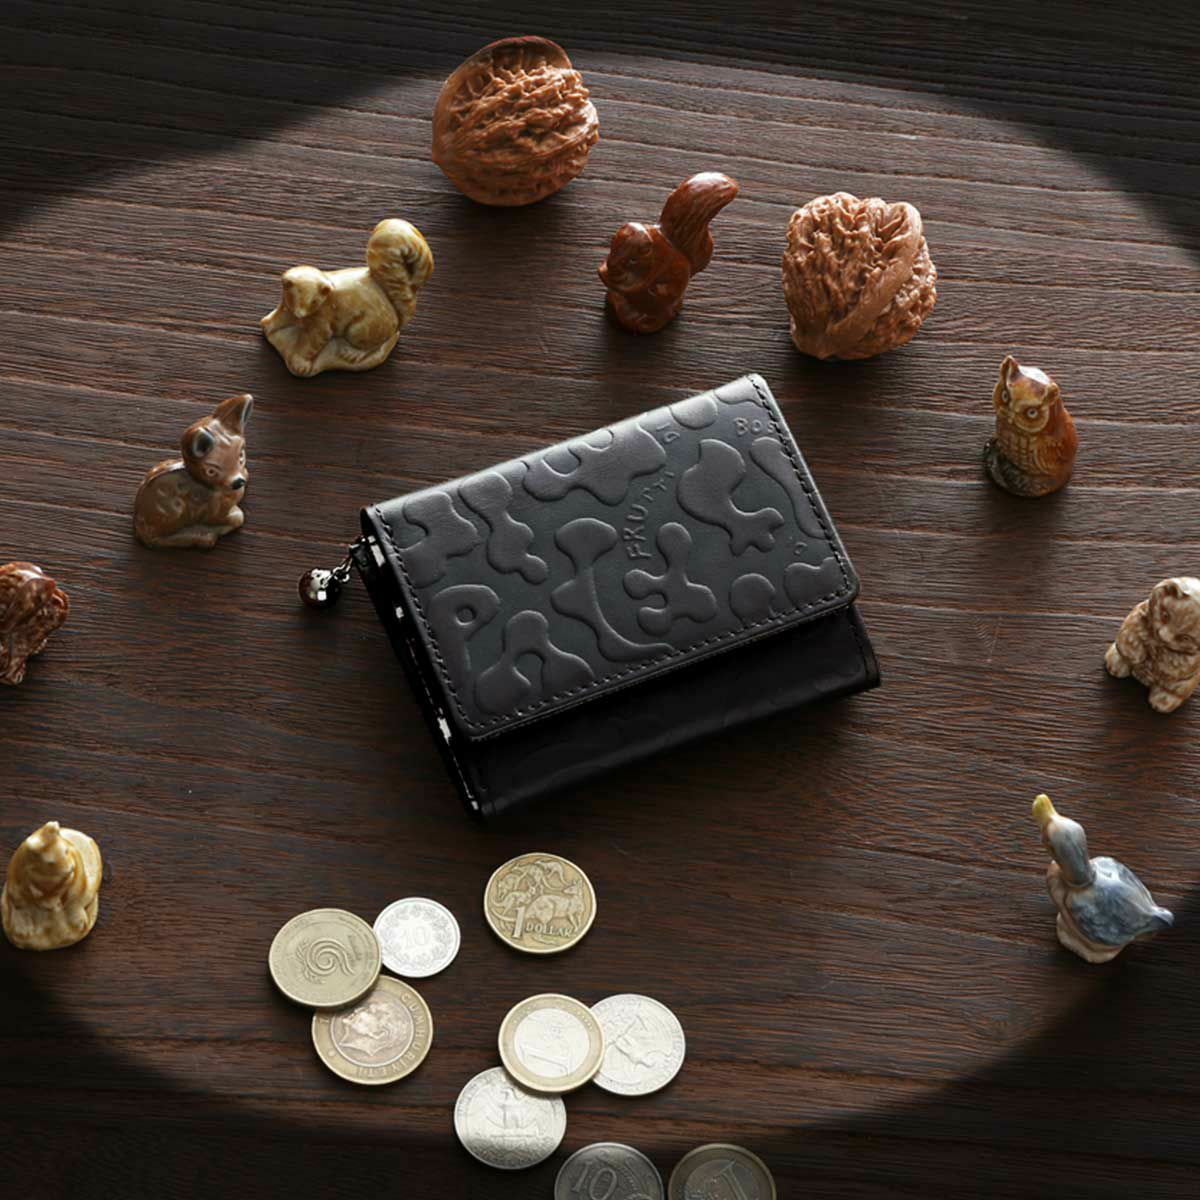 センスのいいレディースブランド3万円財布はFRUTTIのメゾテアトロです